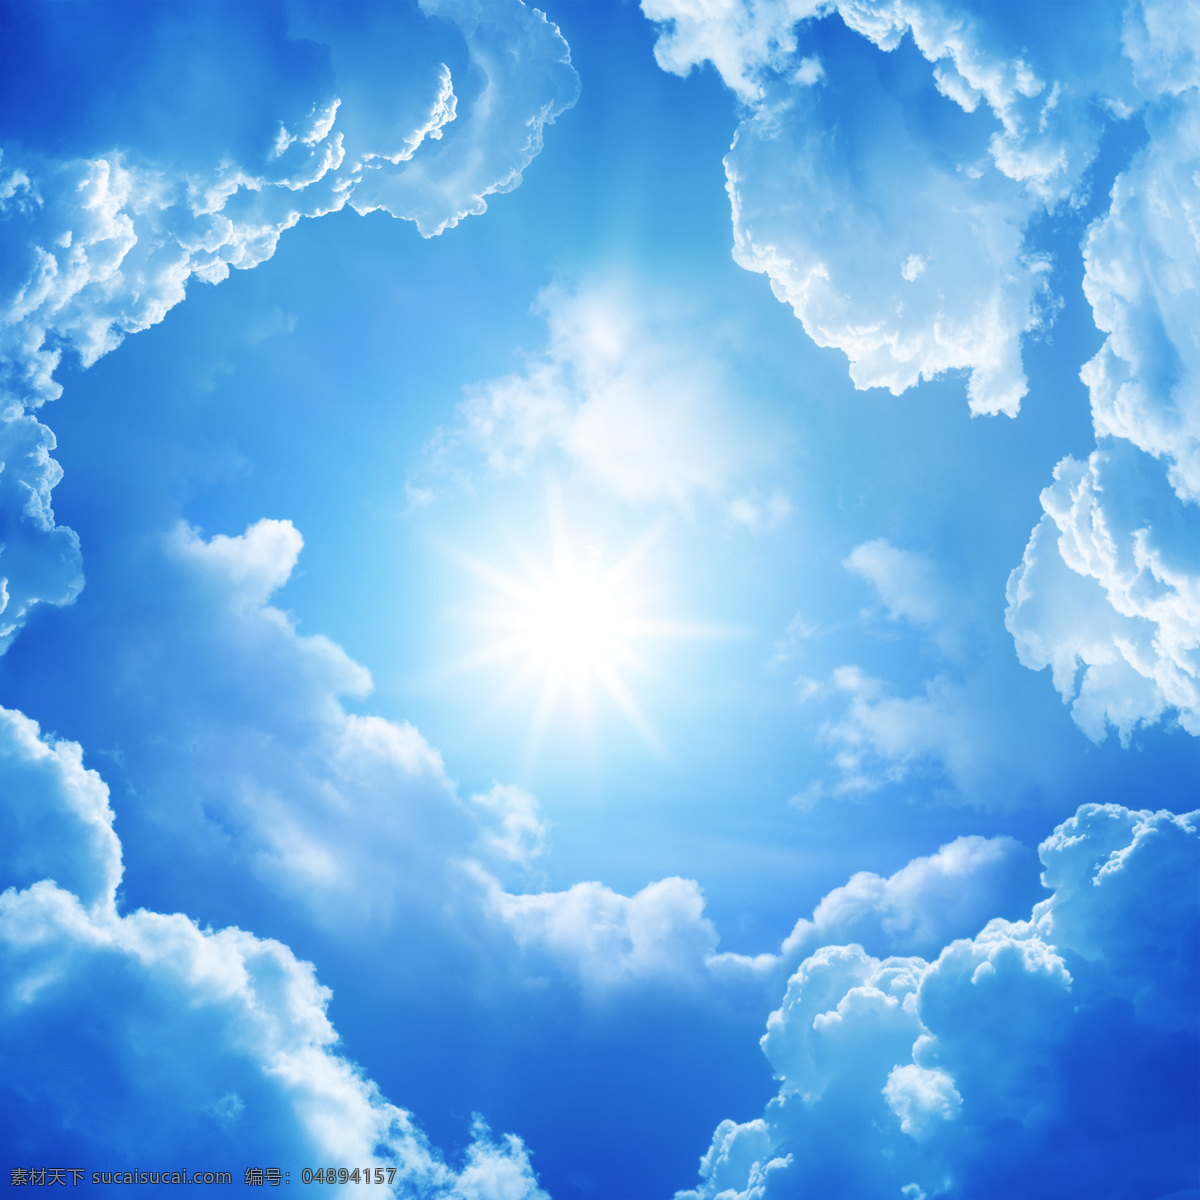 变幻莫测 云彩 烈阳 白云 蓝蓝的天空 明媚的阳光 奇怪的云朵 天空图片 风景图片